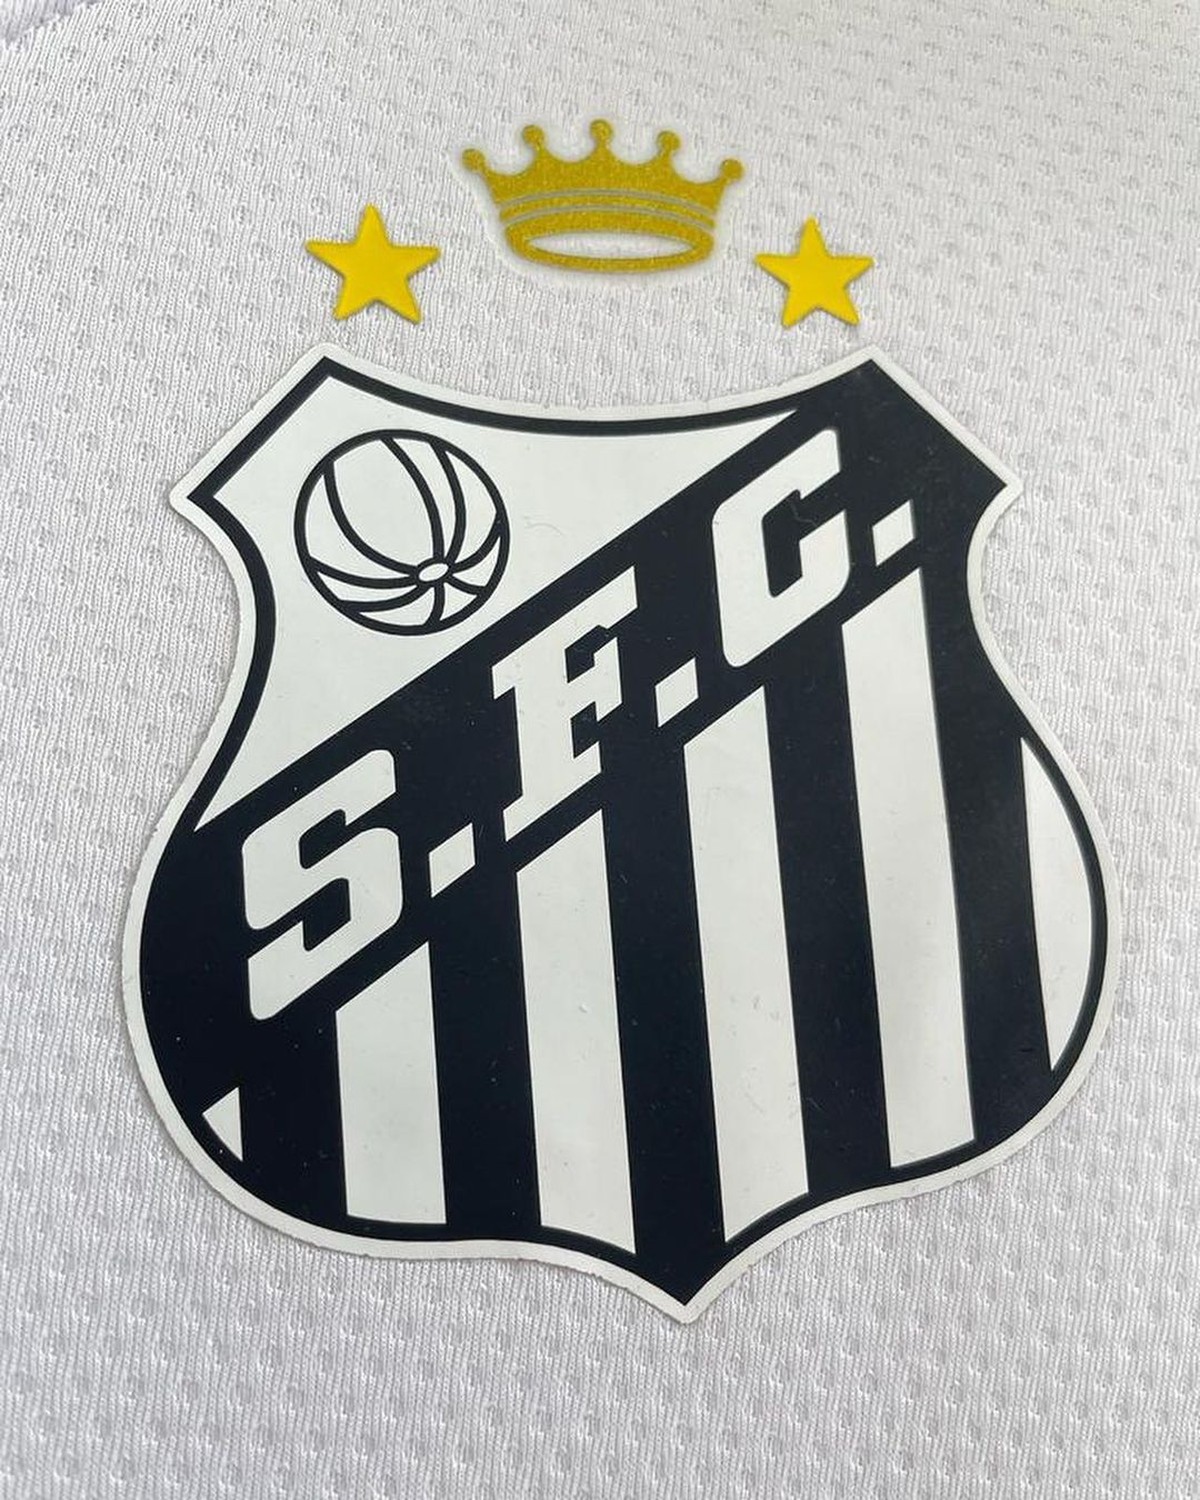 Santos divulga camisa com coroa em homenagem a Pelé no escudo